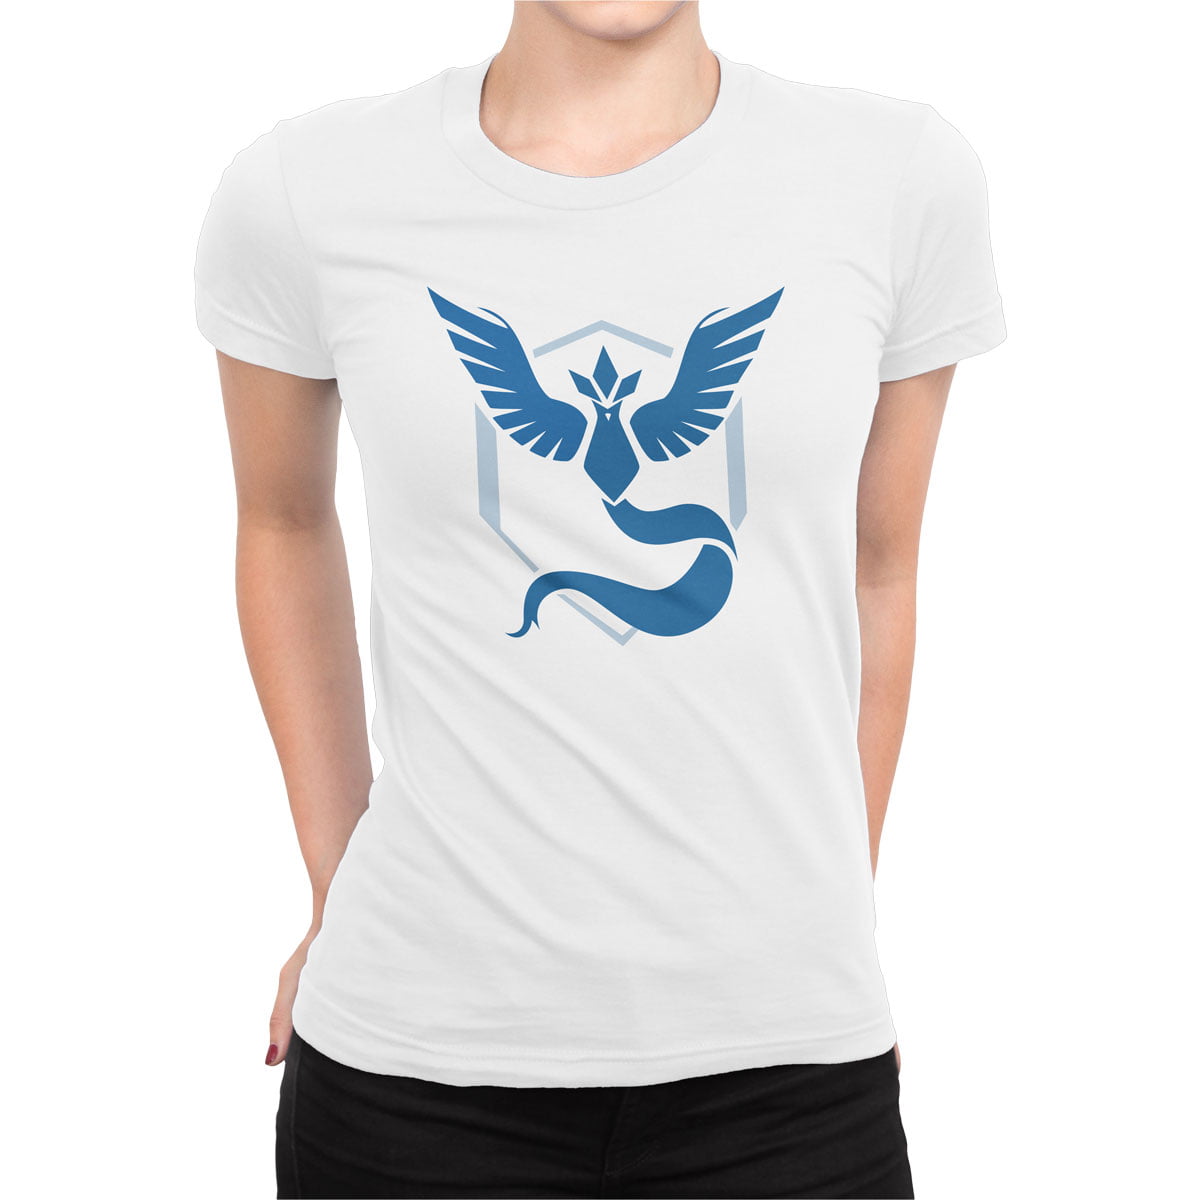 Pokemon go mavi takim mystic tisort kadin b - pokemon go team mystic kadın t-shirt - figurex